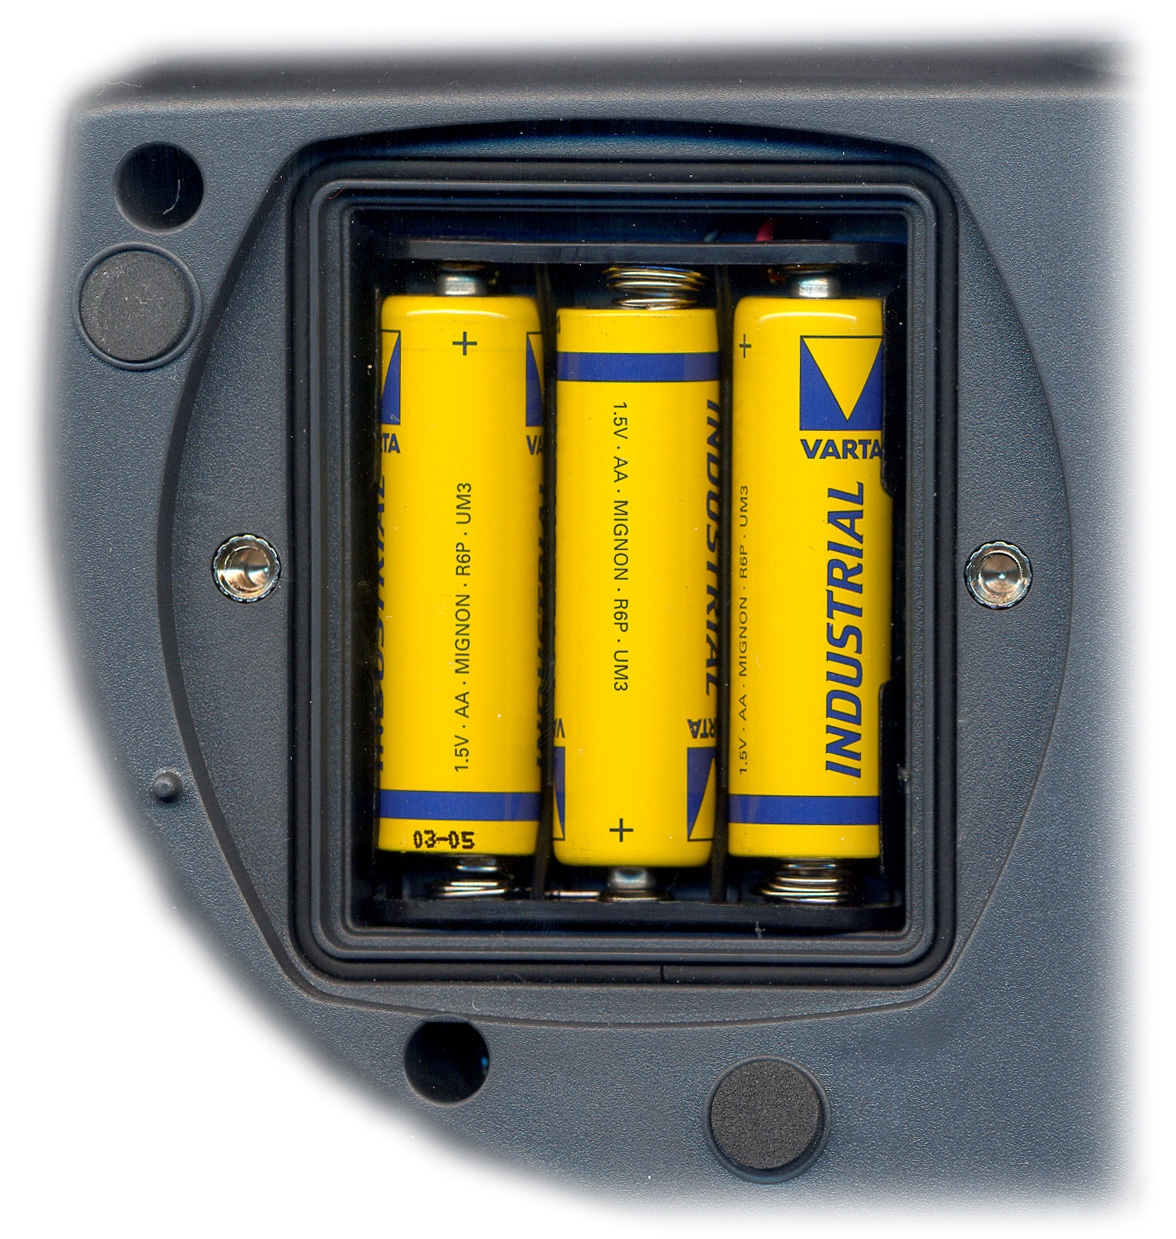 SINAL DE BATERIA DESCARREGADA E SUSTITUIÇÃO DAS BATERIAS O símbolo de bateria no display fornece constantemente o status de carga das baterias.